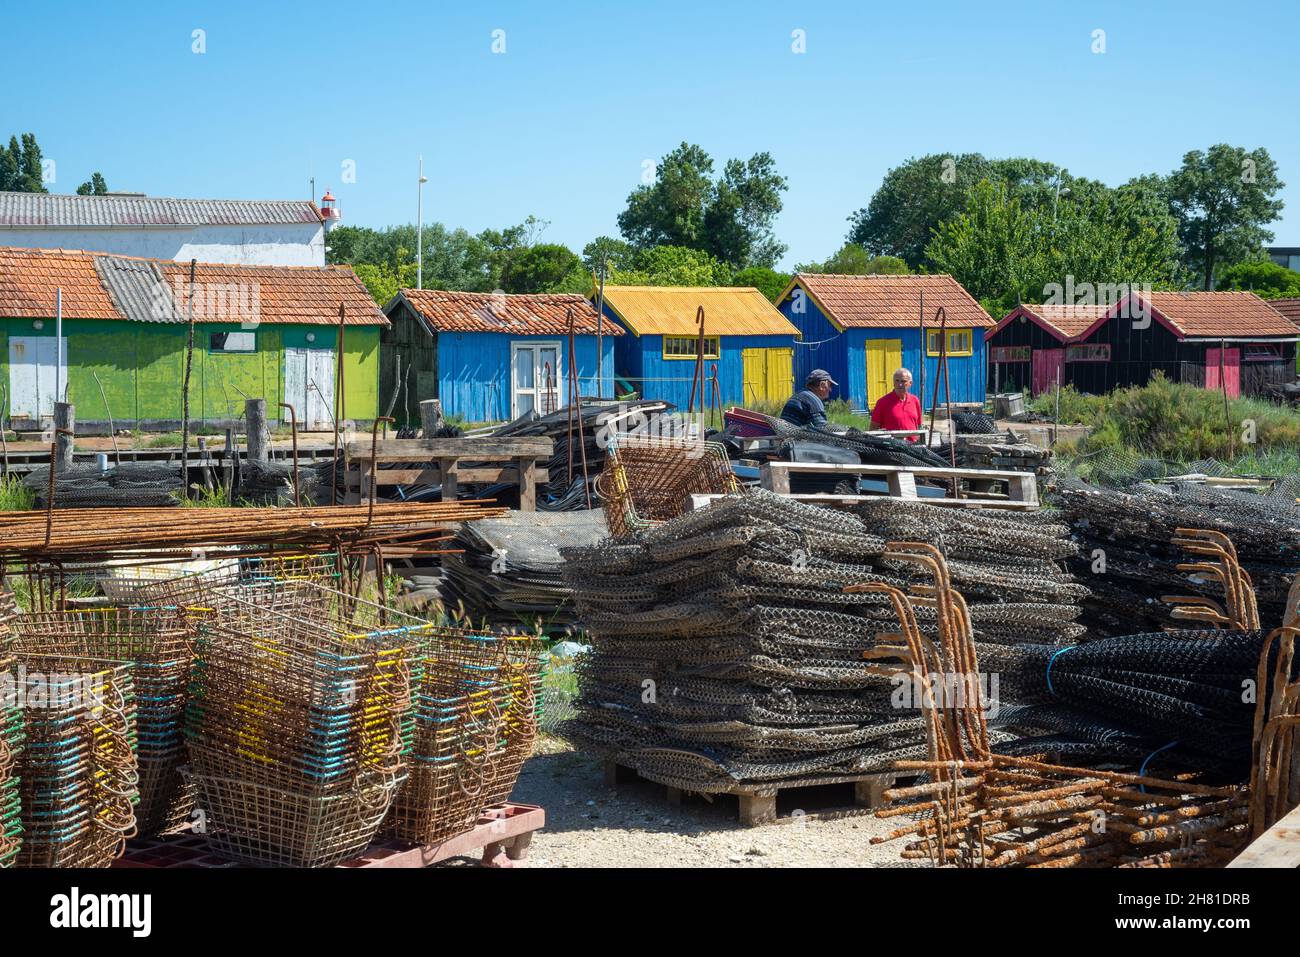 Île d'Oléron, Charente-Maritime, France - 7 juin 2014 : deux pêcheurs expérimentés conversant devant des huttes d'huîtres colorées dans le port du village Banque D'Images